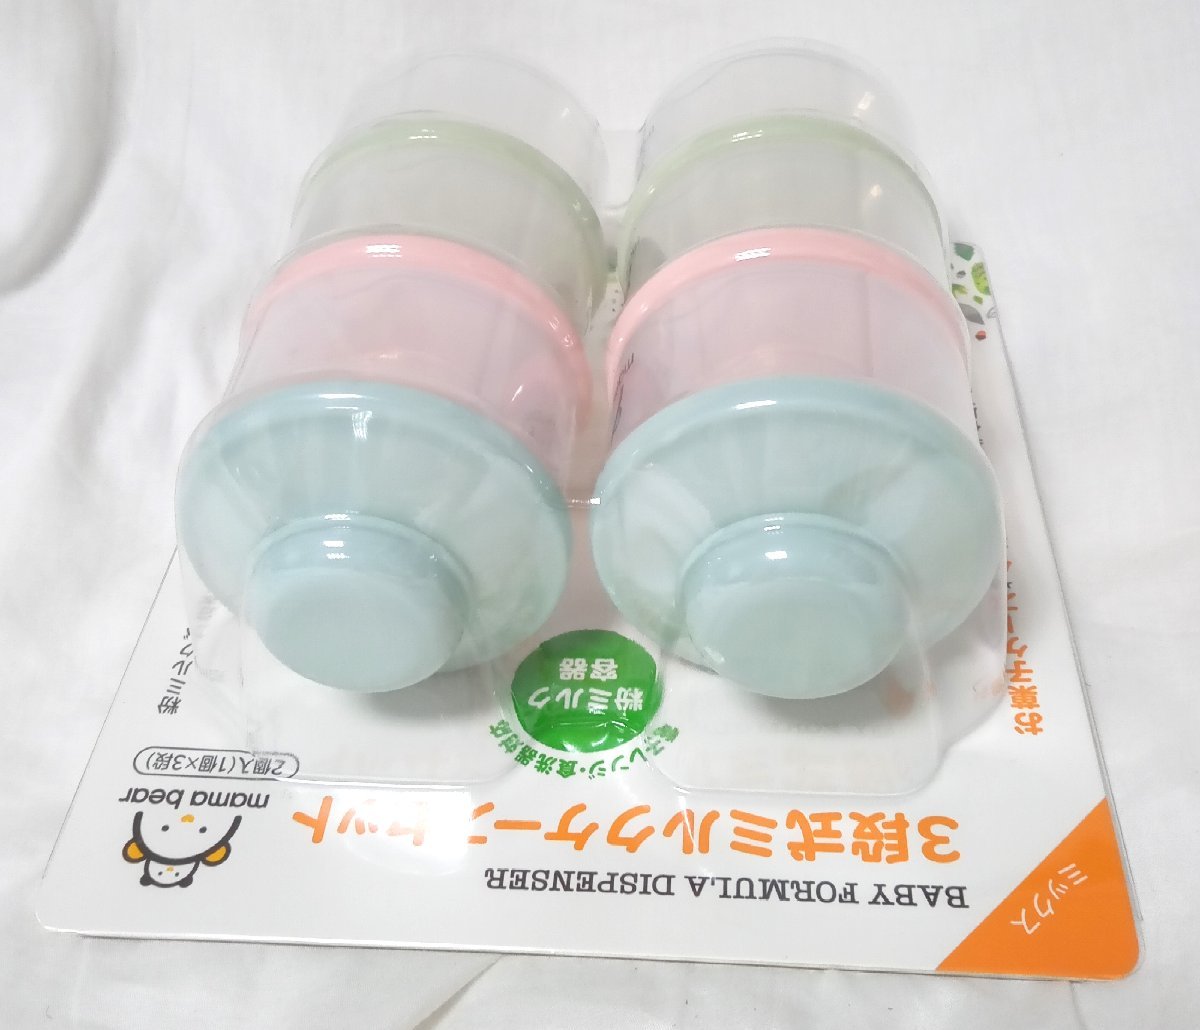 *Mama Bear мама Bear -3 ступенчатый молоко кейс комплект * микроволновая печь * dishwasher соответствует 591 иен 